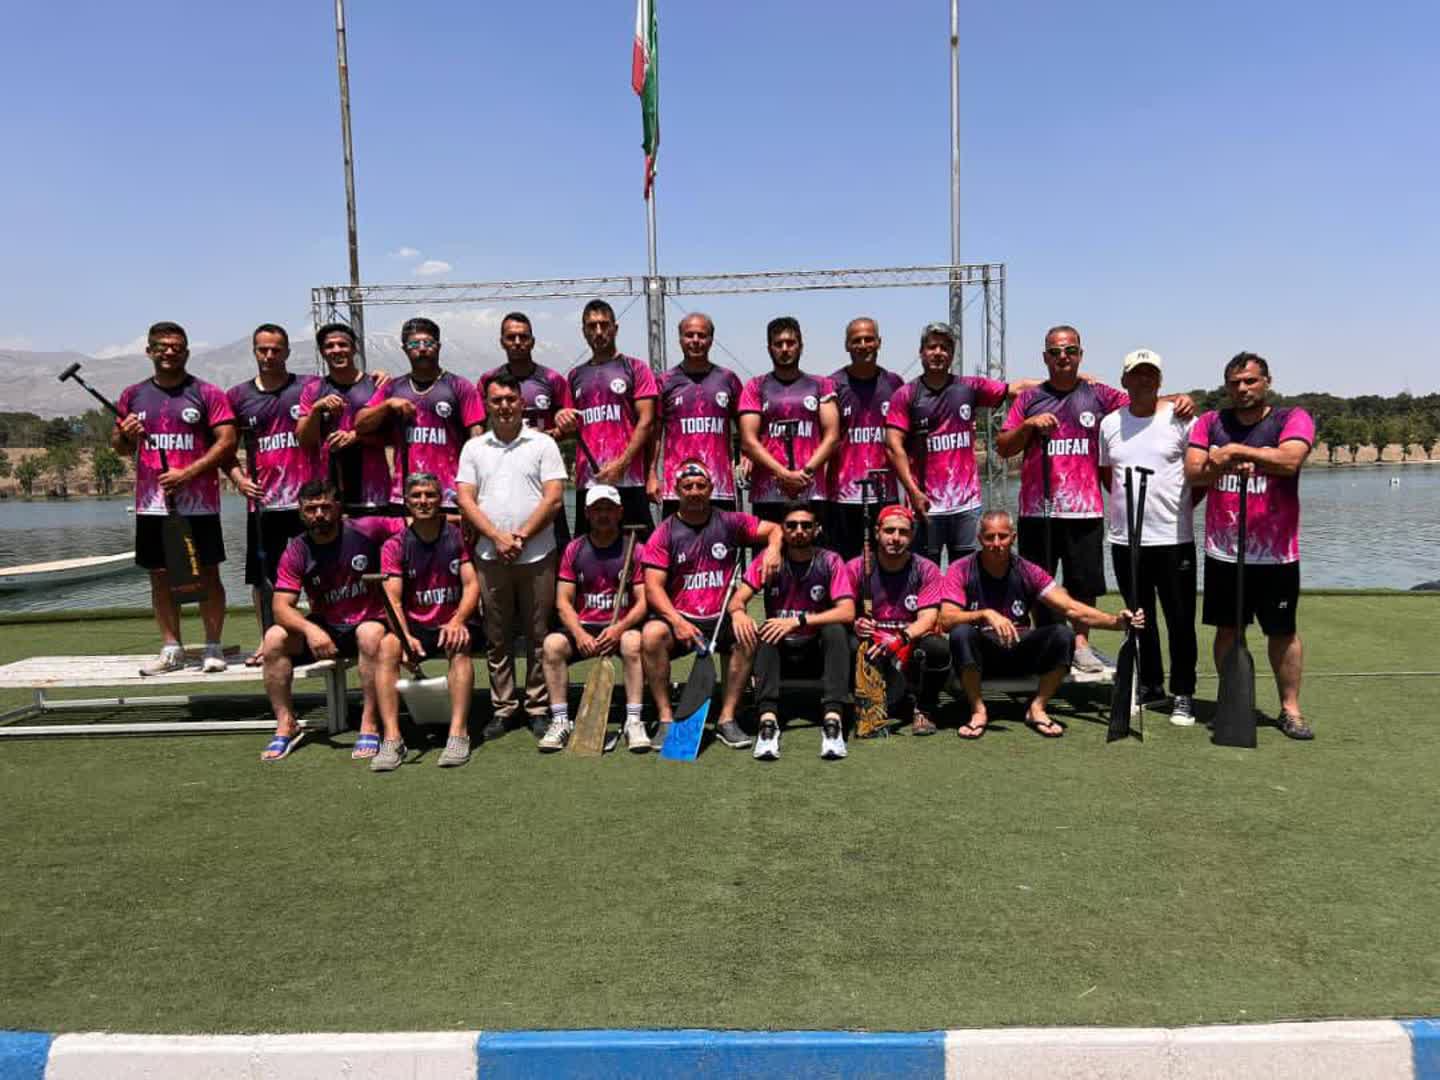 قهرمانی تیم قایقرانی دراگون بوت منطقه آزاد انزلی در لیگ برتر كشور